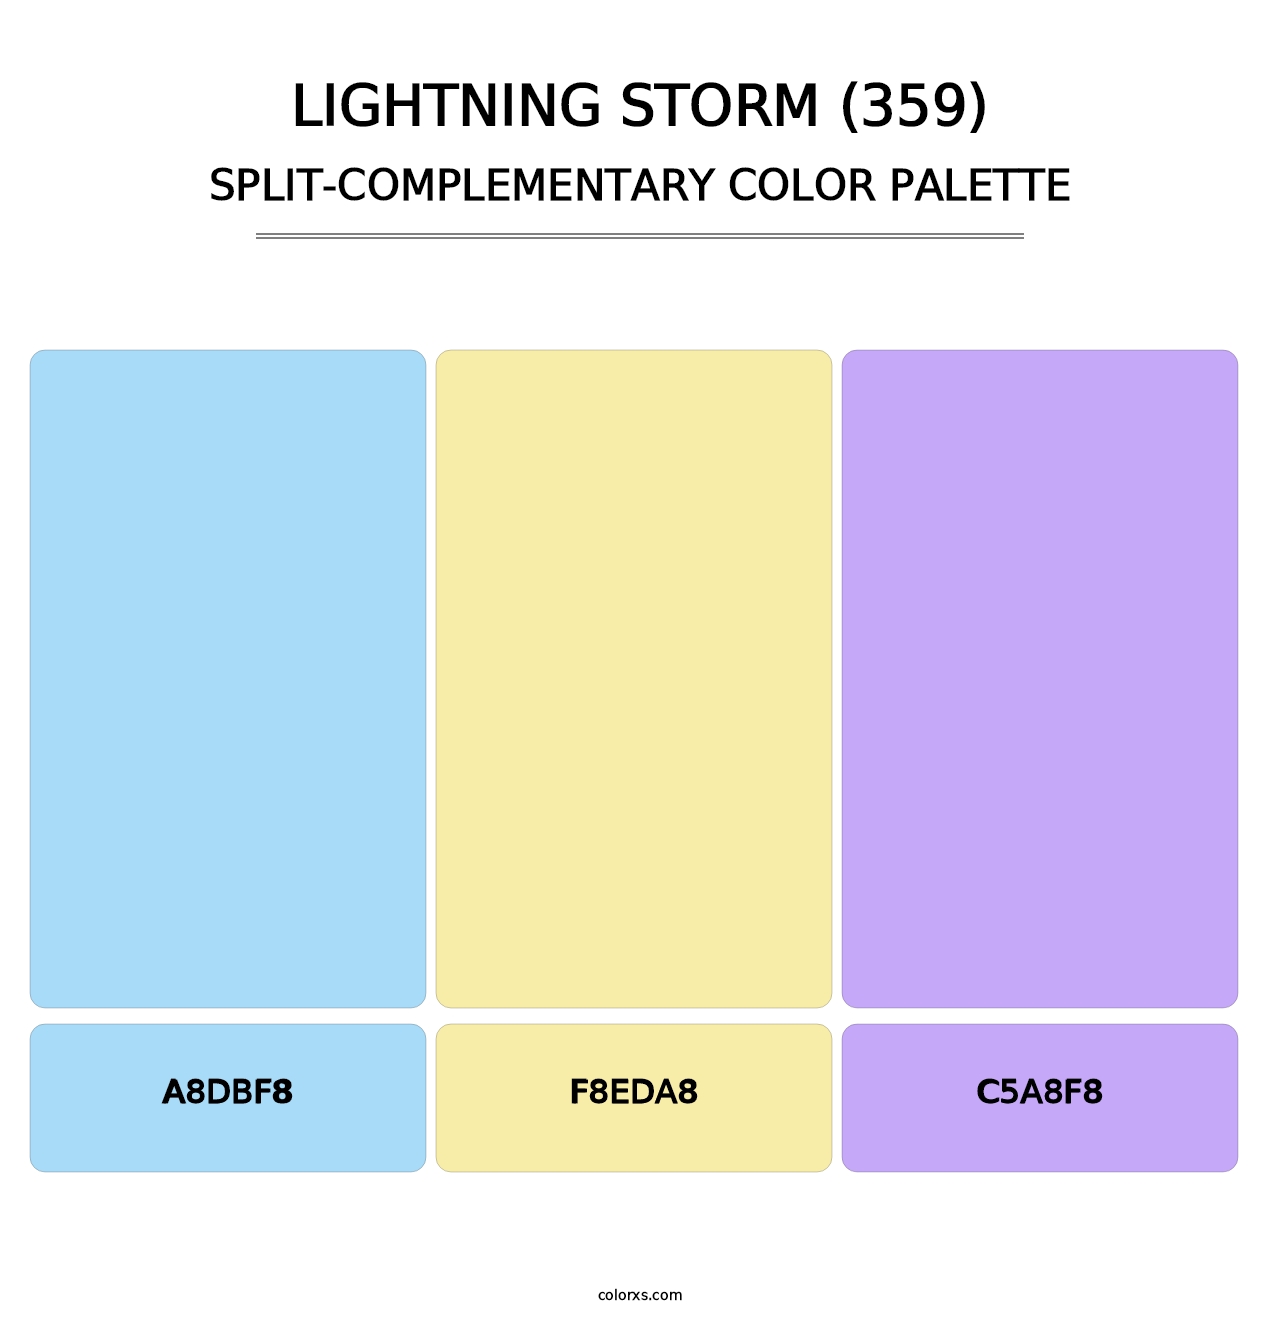 Lightning Storm (359) - Split-Complementary Color Palette